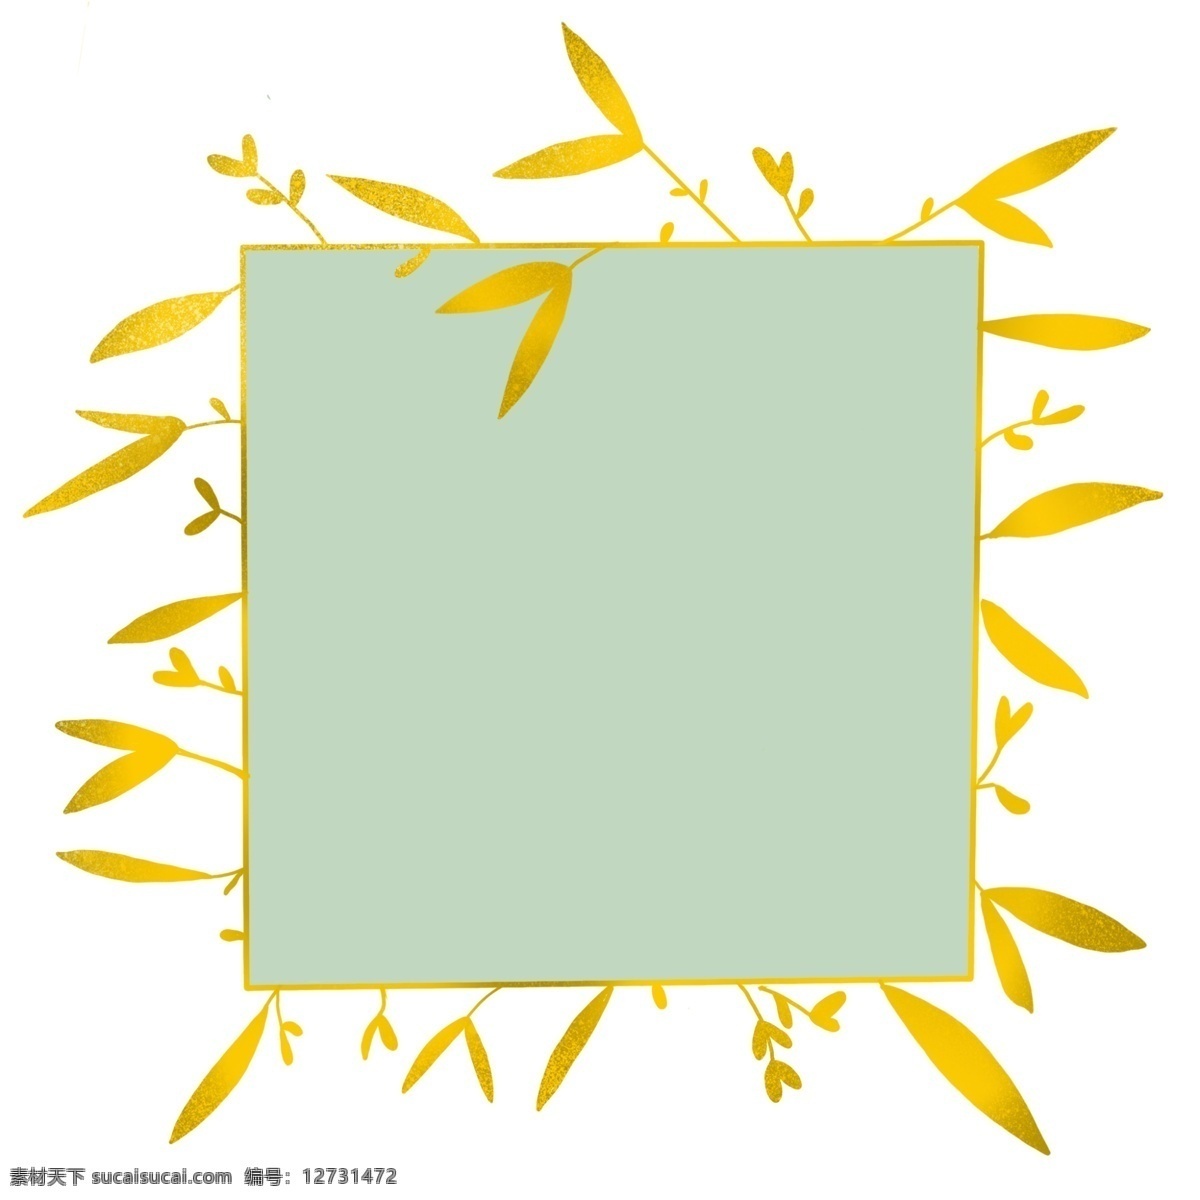 黄色 装饰 正方形 边框 立体边框 黄色边框 树叶边框 二维码边框 边框插图 简约的边框 创意边框